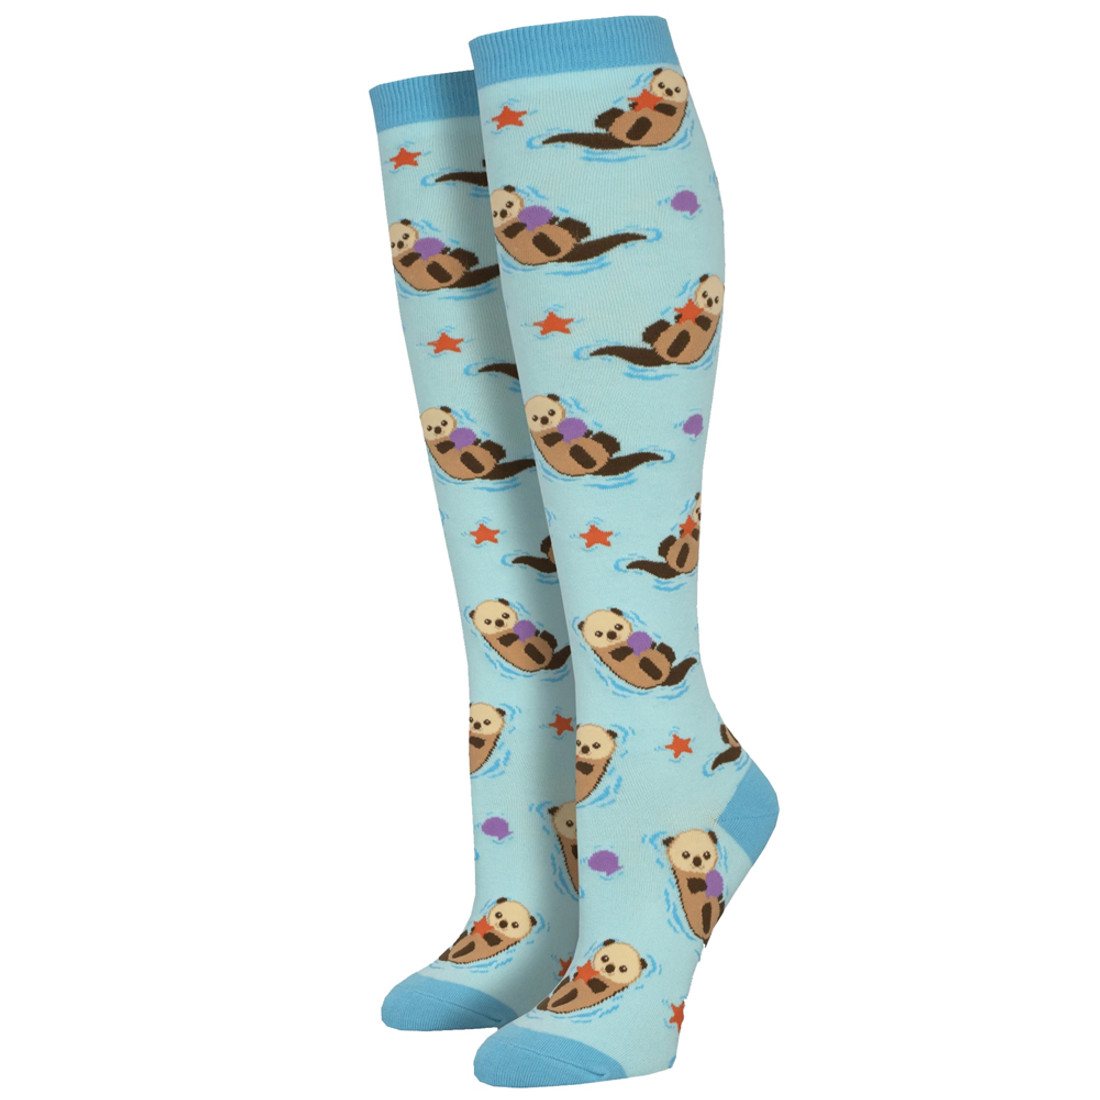 Otter Spotter Women's Knee High Socks